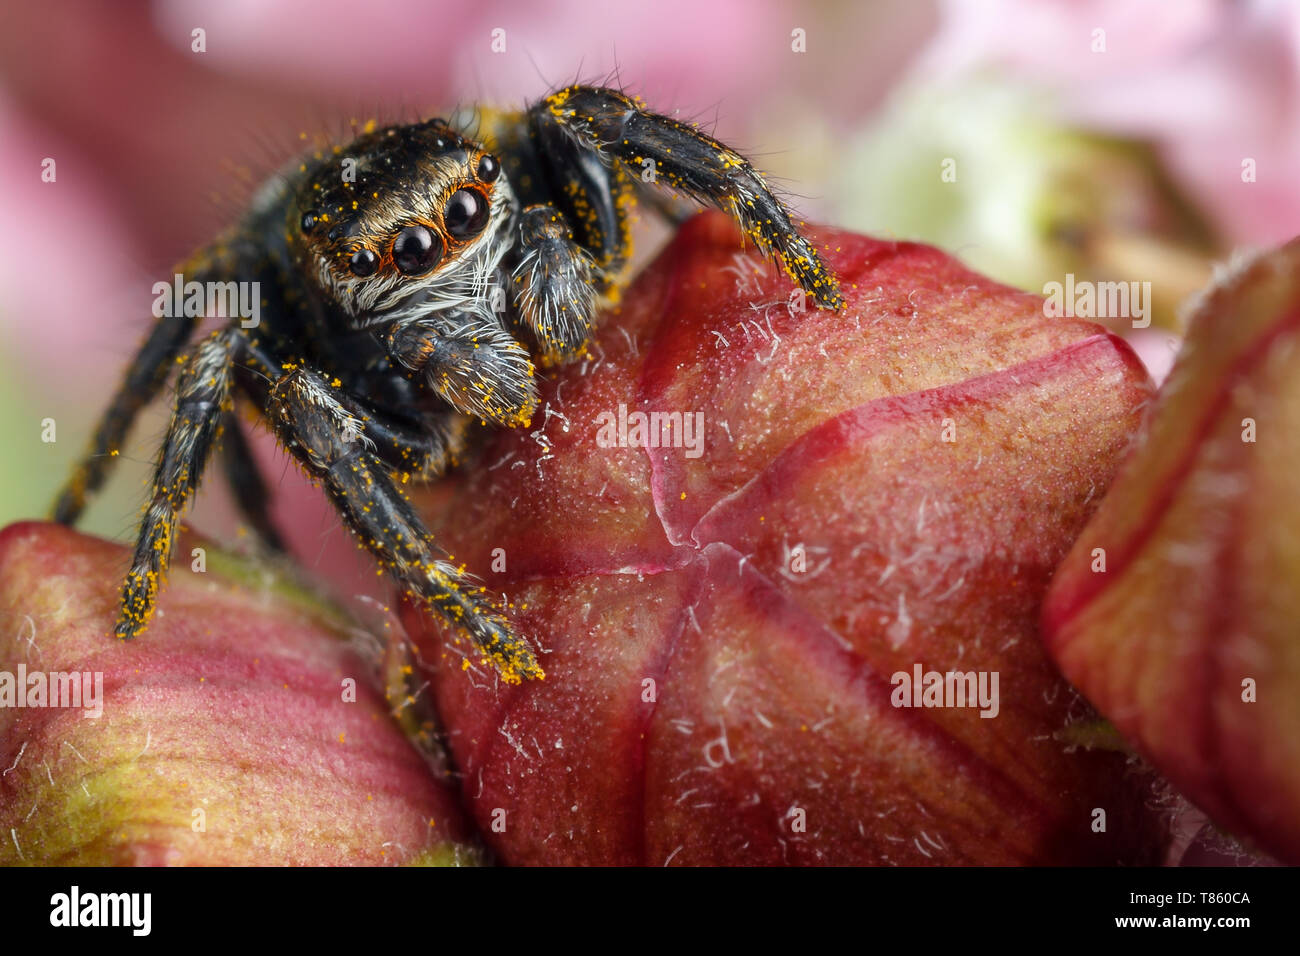 Jumping spider con giallo polen sulle gemme di colore rosso Foto Stock